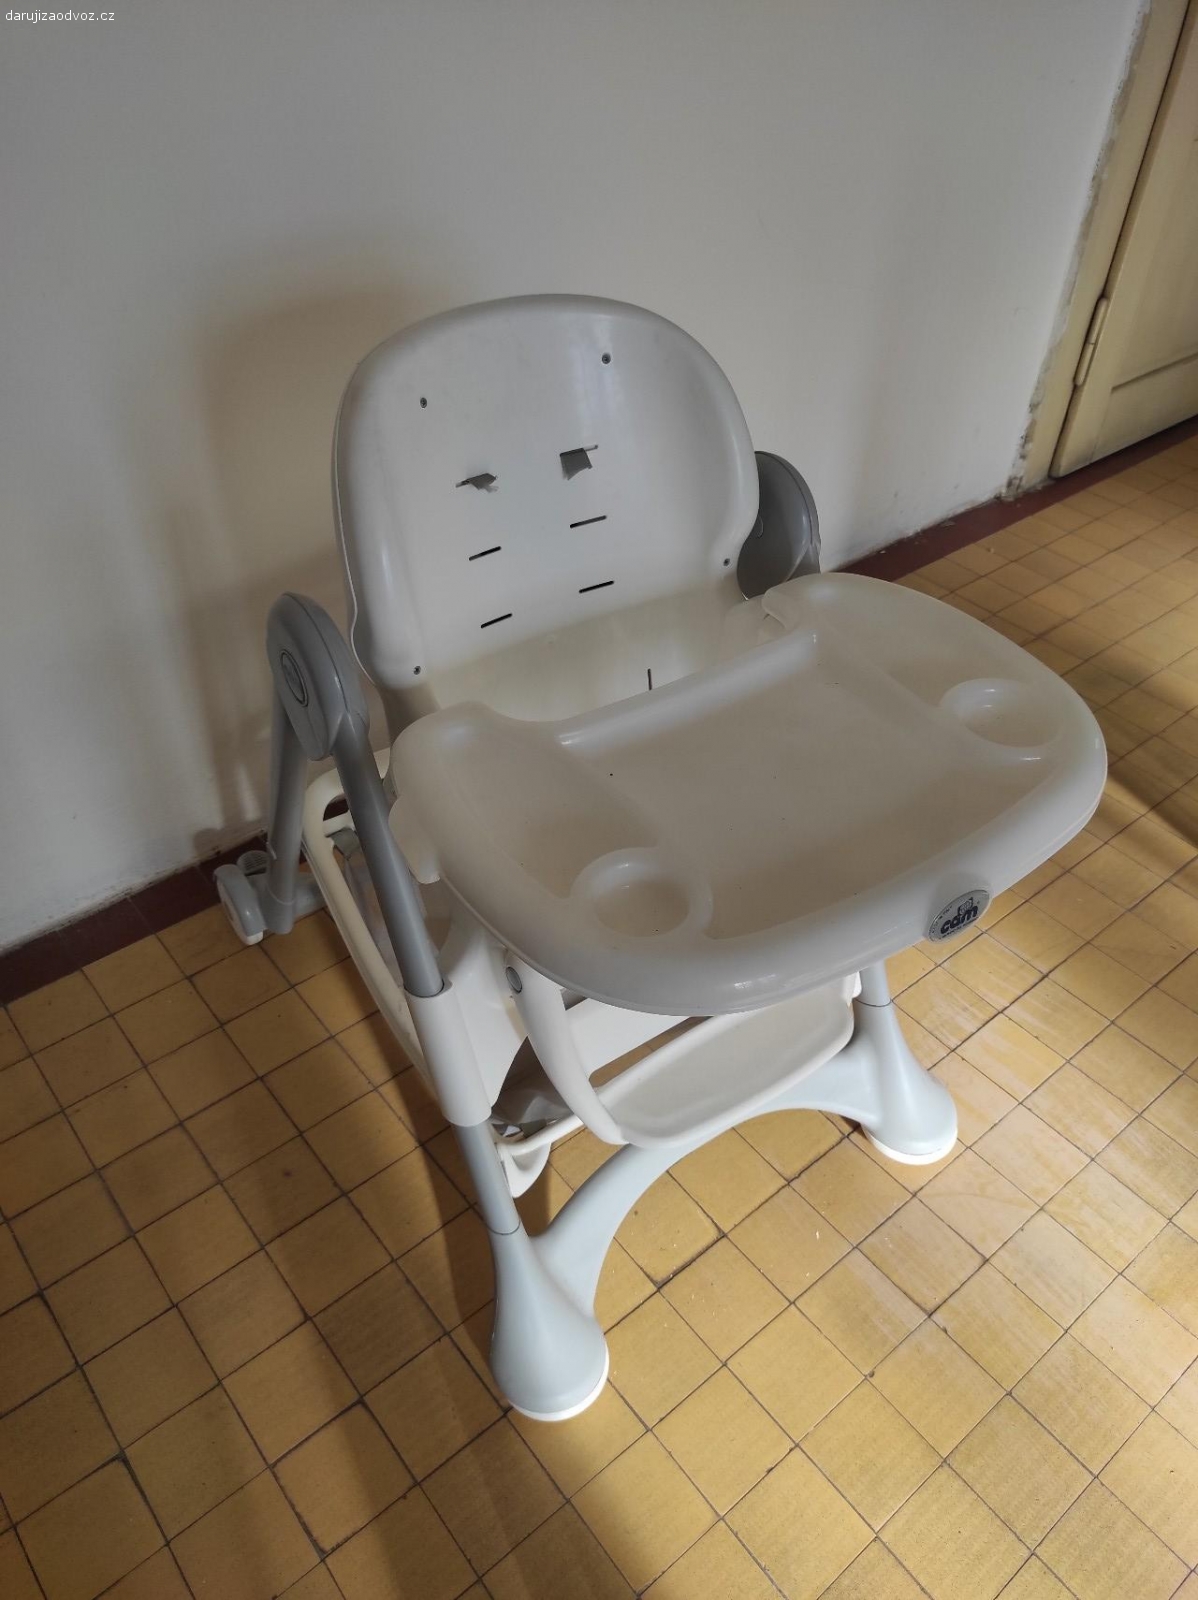 sedačka pro dítě. sedačka pro dítě viz foto, utržené popruhy
nastavitelný sklon opěradla